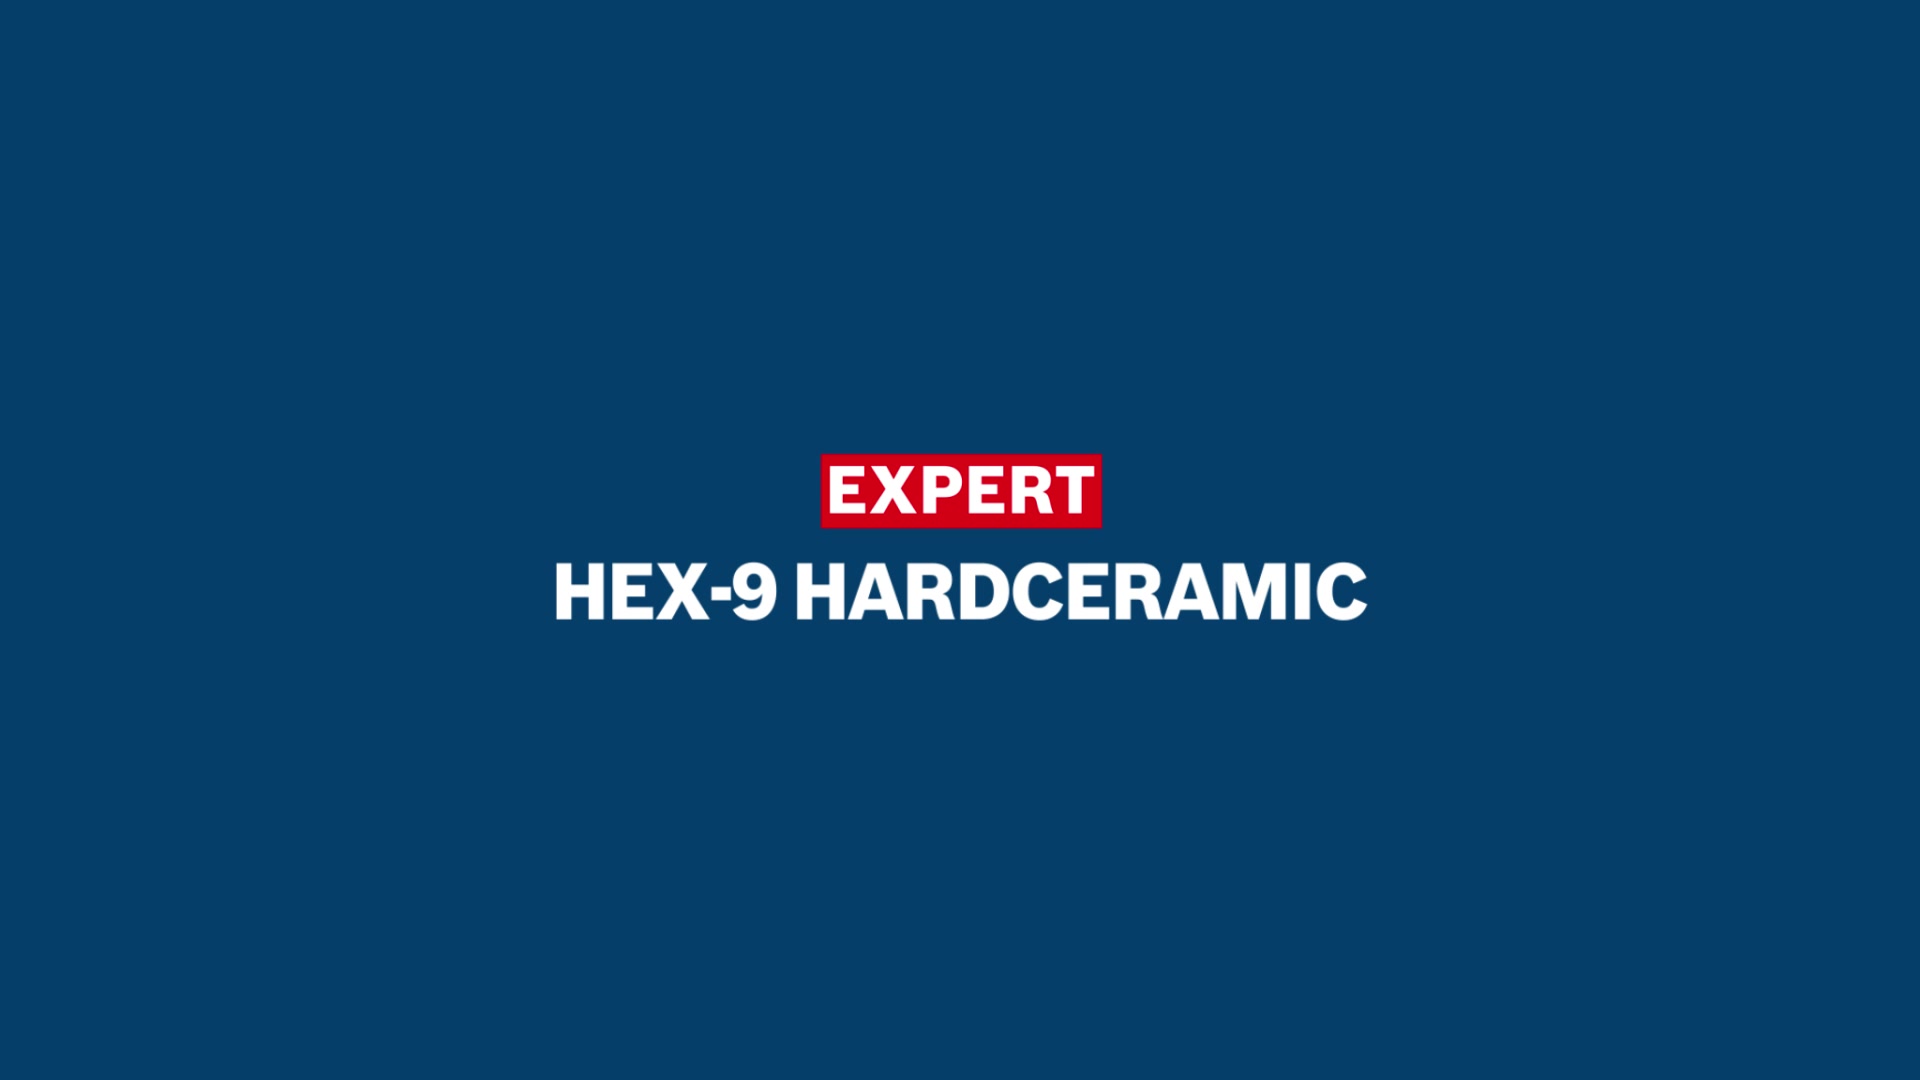 EXPERT HEX-9 HardCeramic